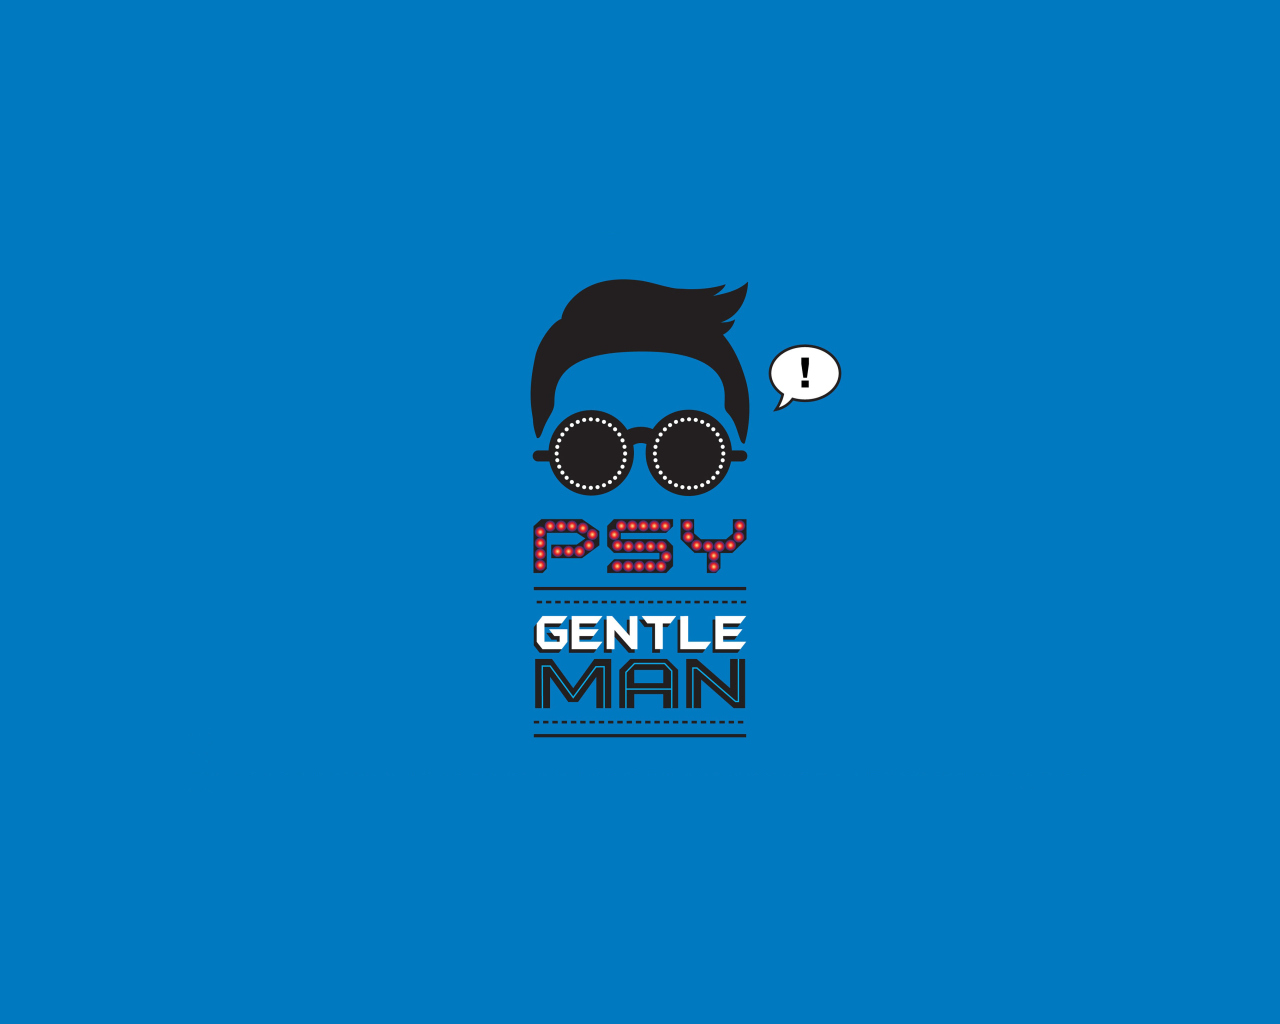 Psy - Gentleman screenshot #1 1280x1024